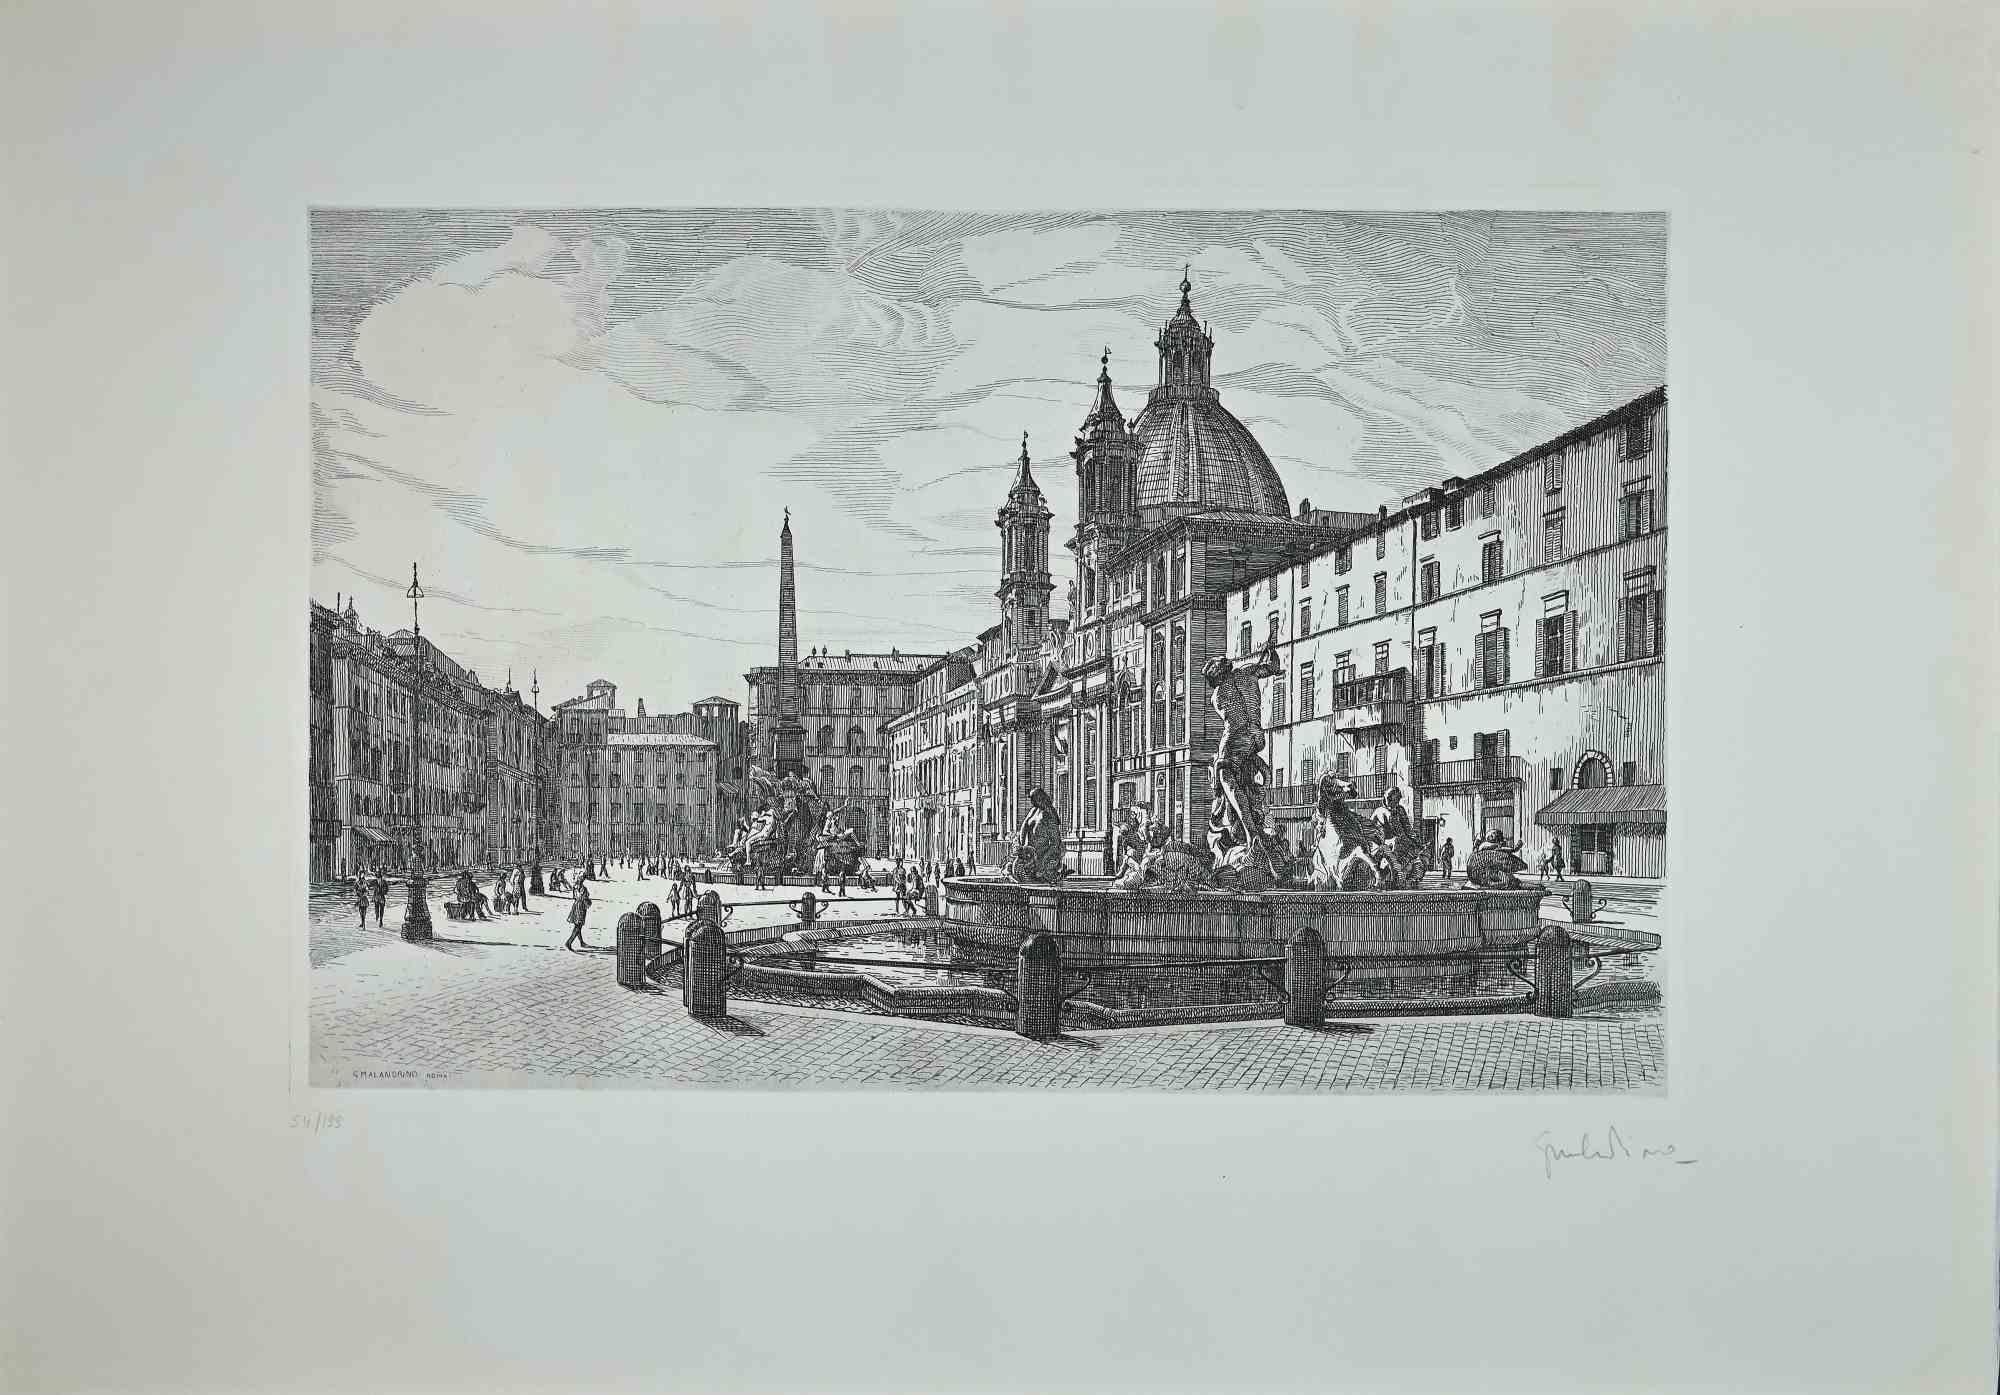 Blick auf die Piazza Navona  ist ein originales zeitgenössisches Kunstwerk, das 1970 von dem italienischen Künstler  Giuseppe Malandrino  (Modica, 1910 - Rom, 1979).
 
Radierung auf Karton.
 
Handsigniert mit Bleistift in der rechten unteren Ecke. 